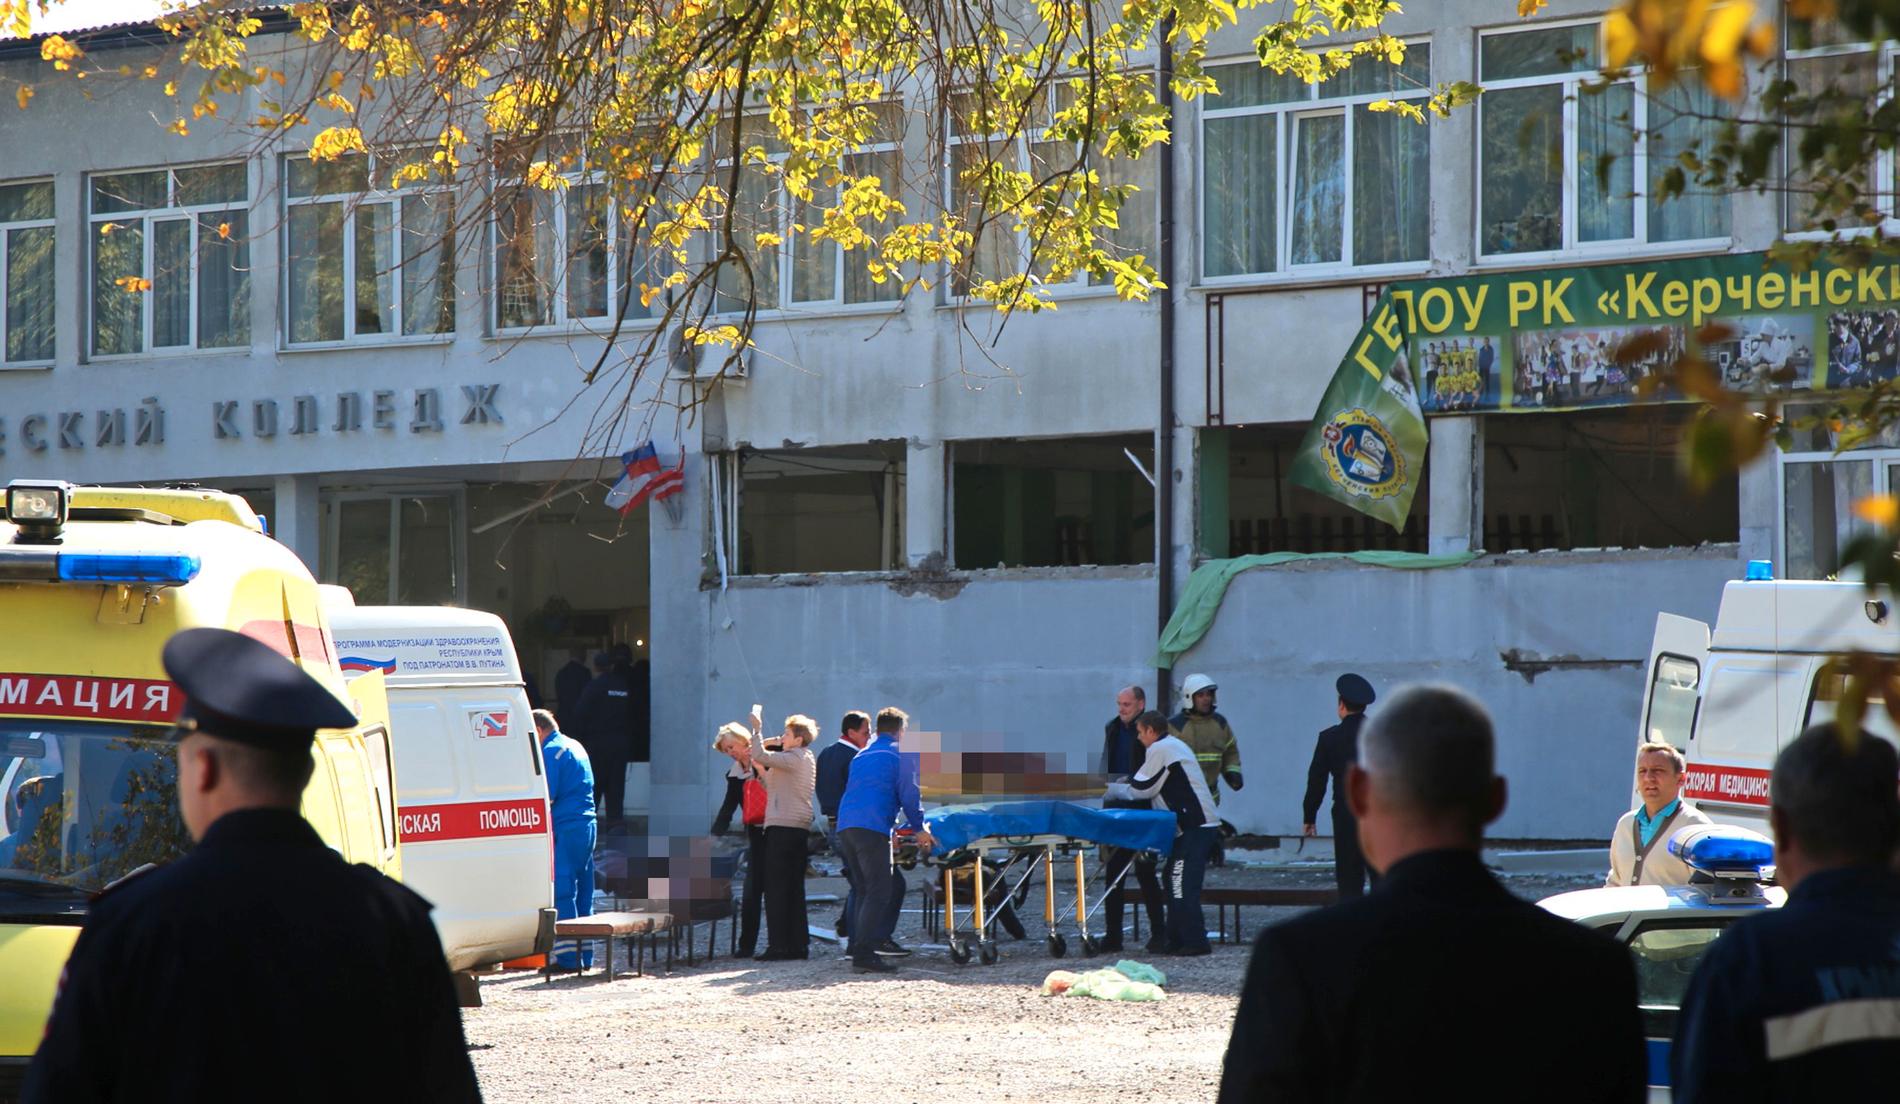 Dådet på skolan i Kerch misstänktes först vara ett terrordåd – men utreds nu som massmord.